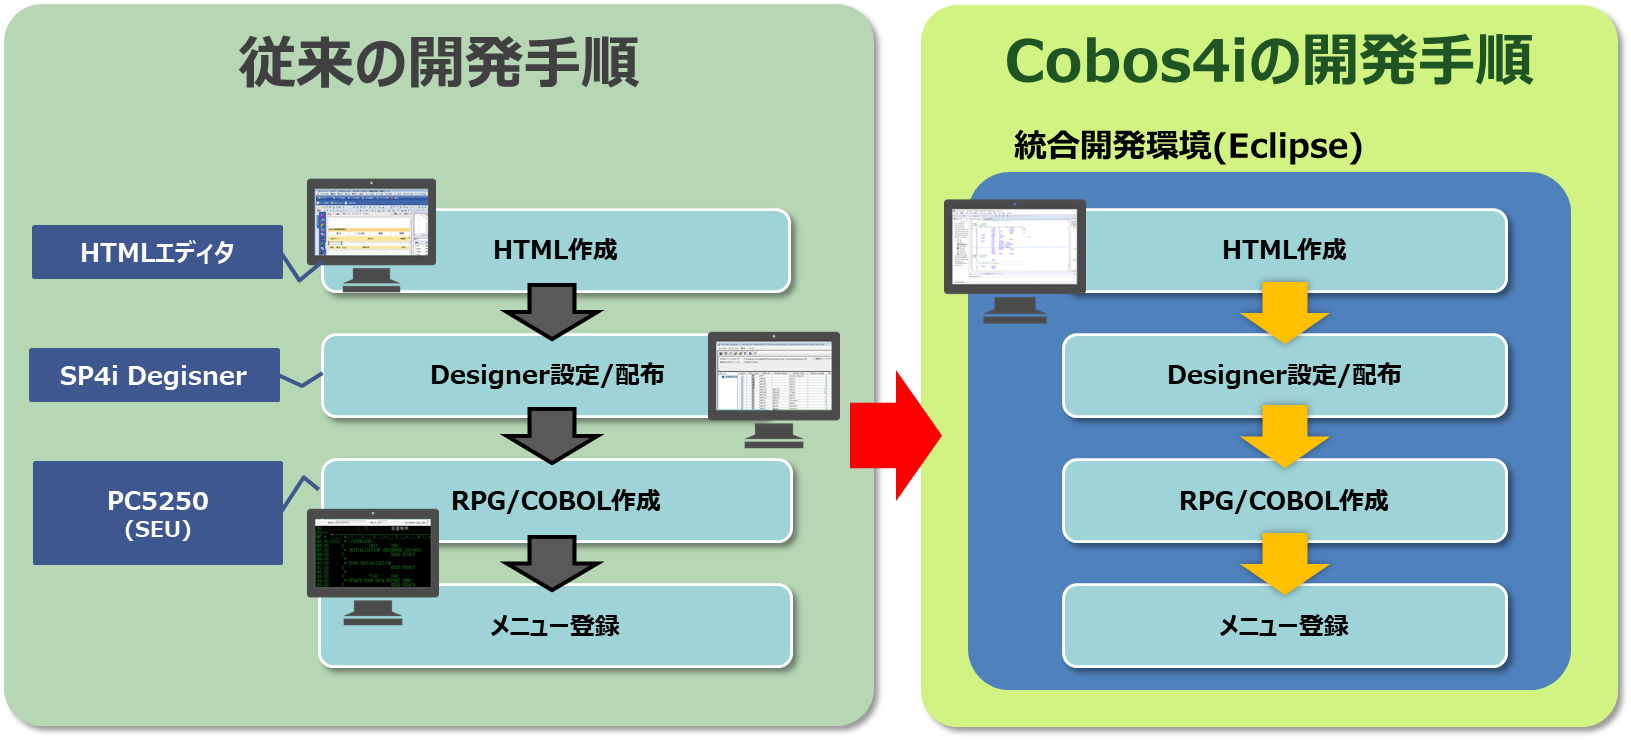 従来の開発手順とCobos4i の比較